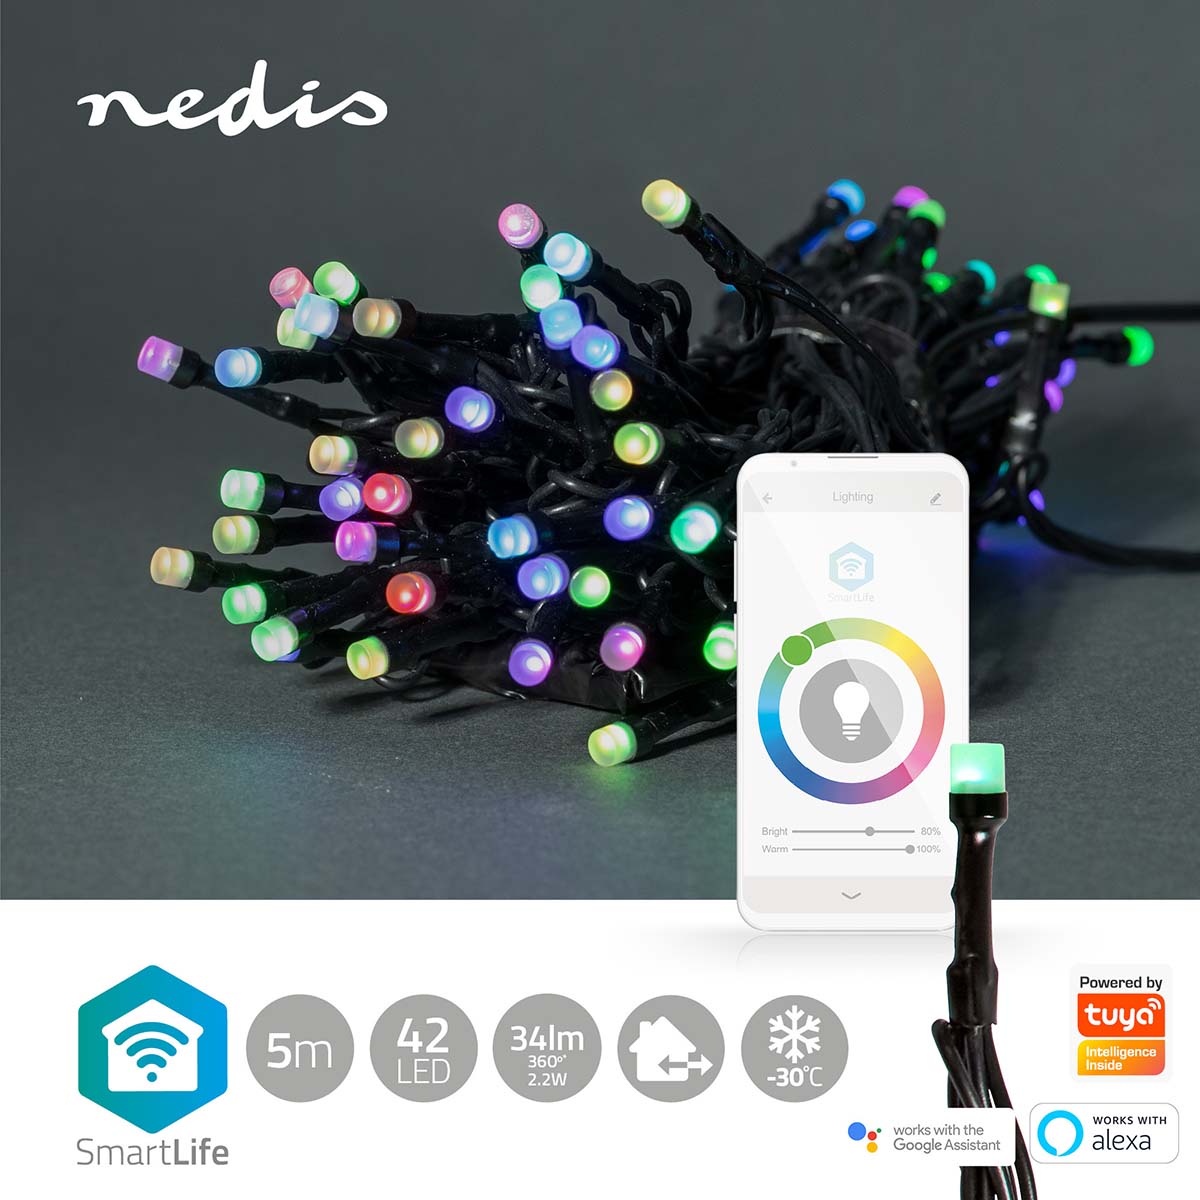 Luzes Nedis Wi-Fi RGB, 42 LEDs em 5m, oferecem iluminação inteligente para um Natal vibrante, controlável via Wi-Fi.